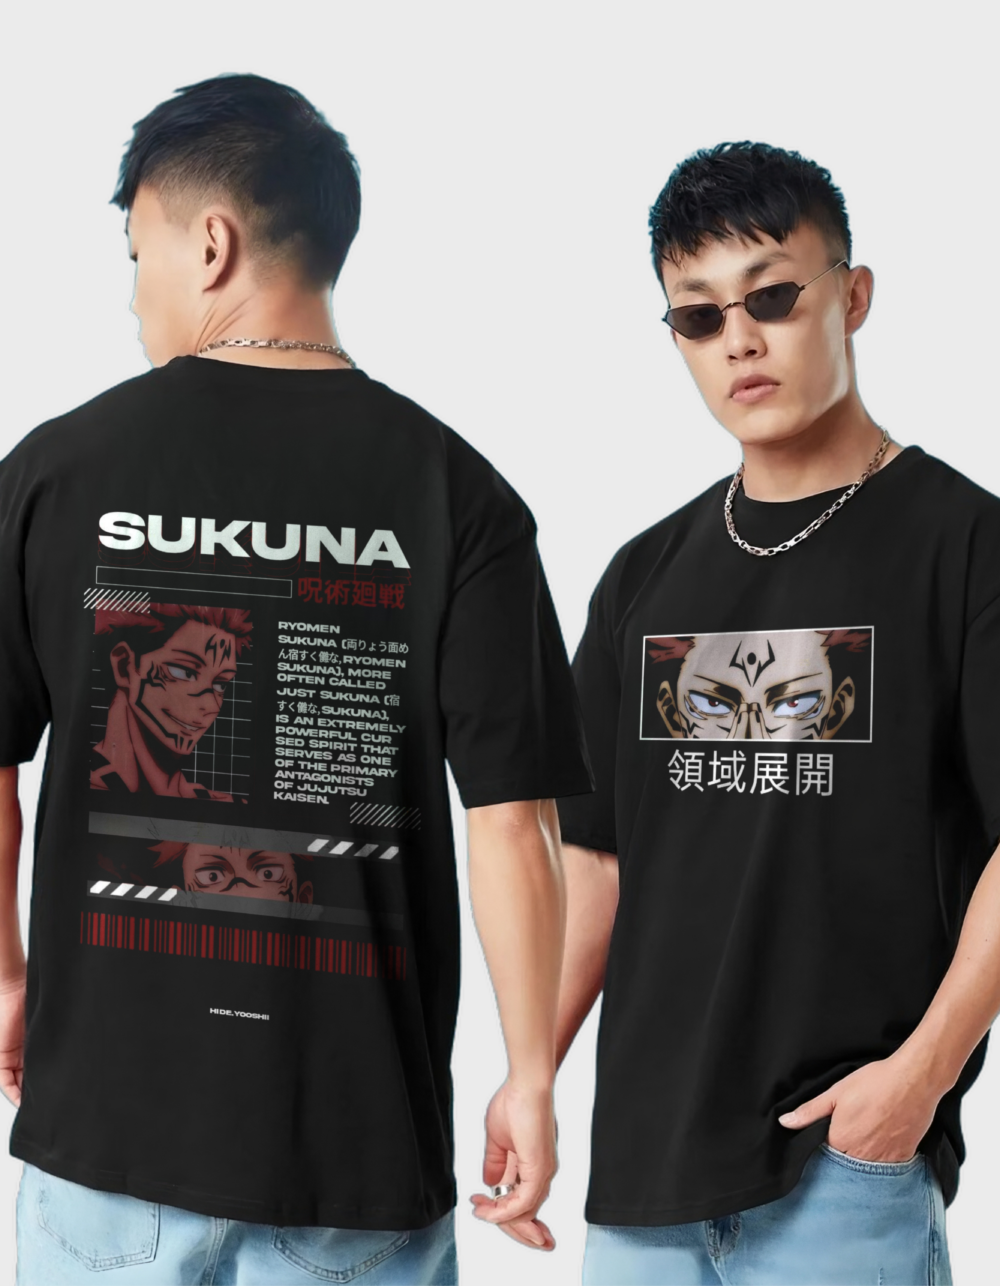 T shirt E 33 1 1000x1286 1 - Jujutsu Kaisen Store